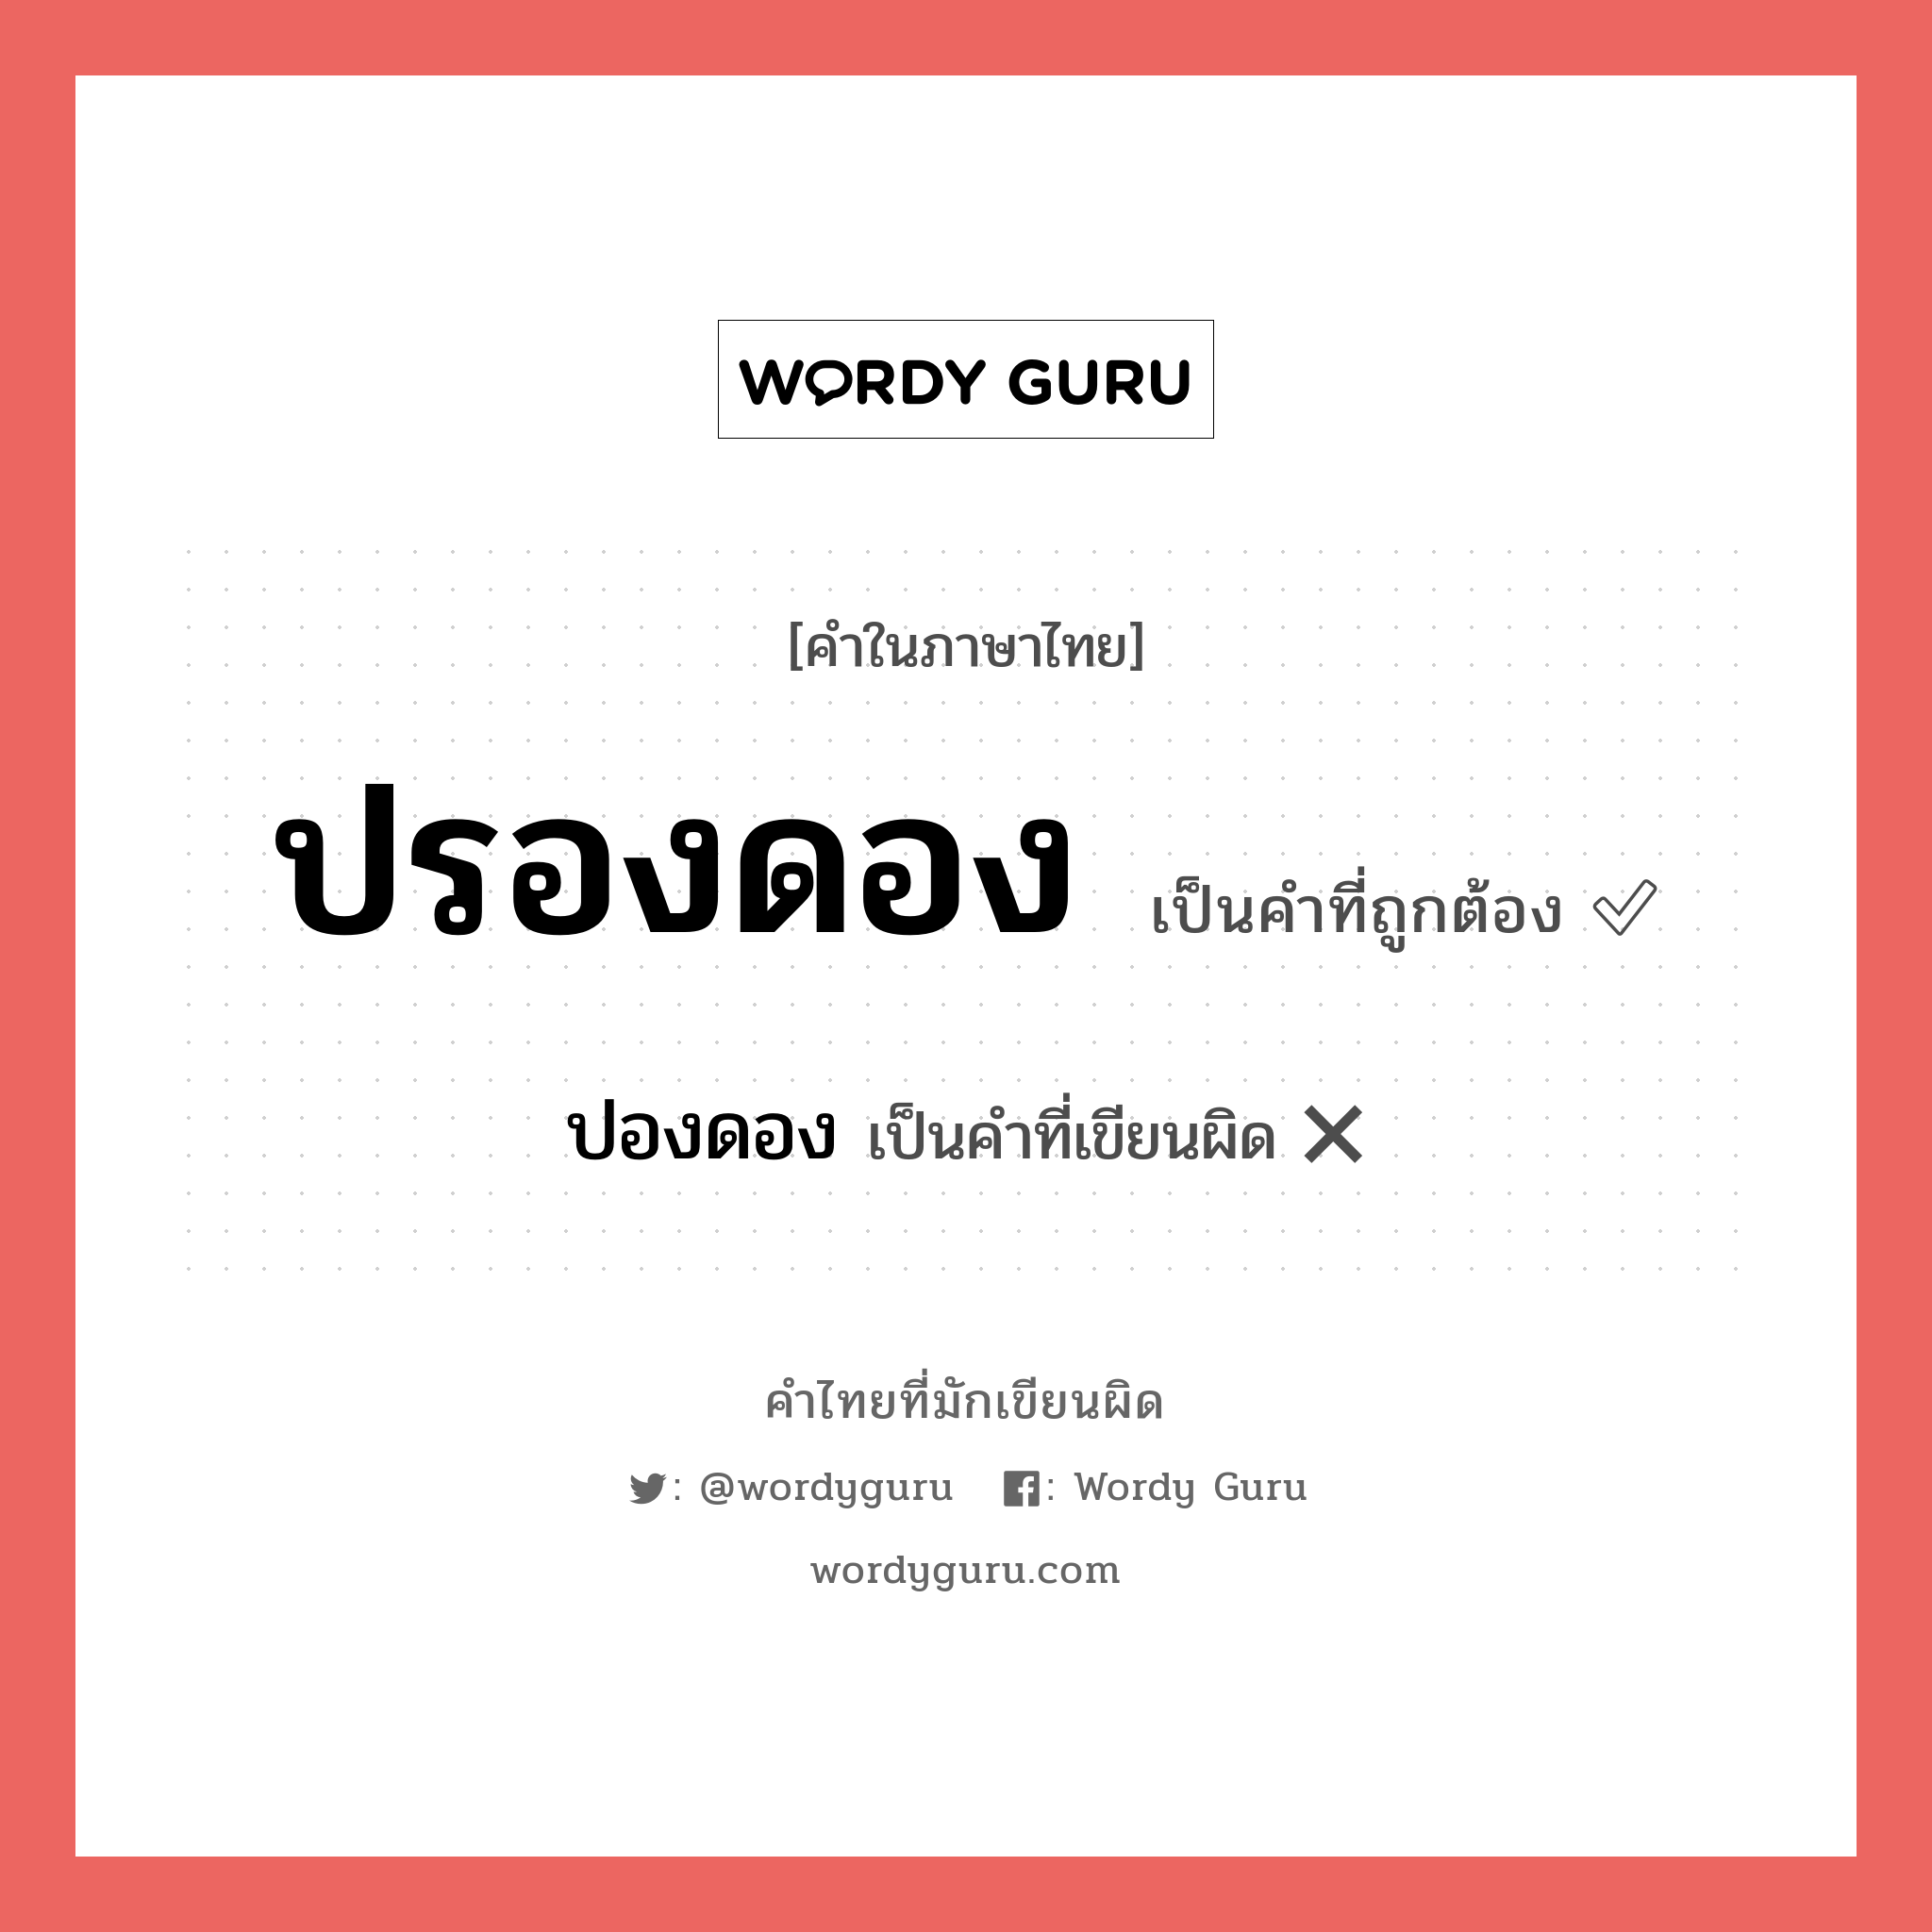 ปรองดอง หรือ ปองดอง คำไหนเขียนถูก?, คำในภาษาไทยที่มักเขียนผิด ปรองดอง คำที่ผิด ❌ ปองดอง